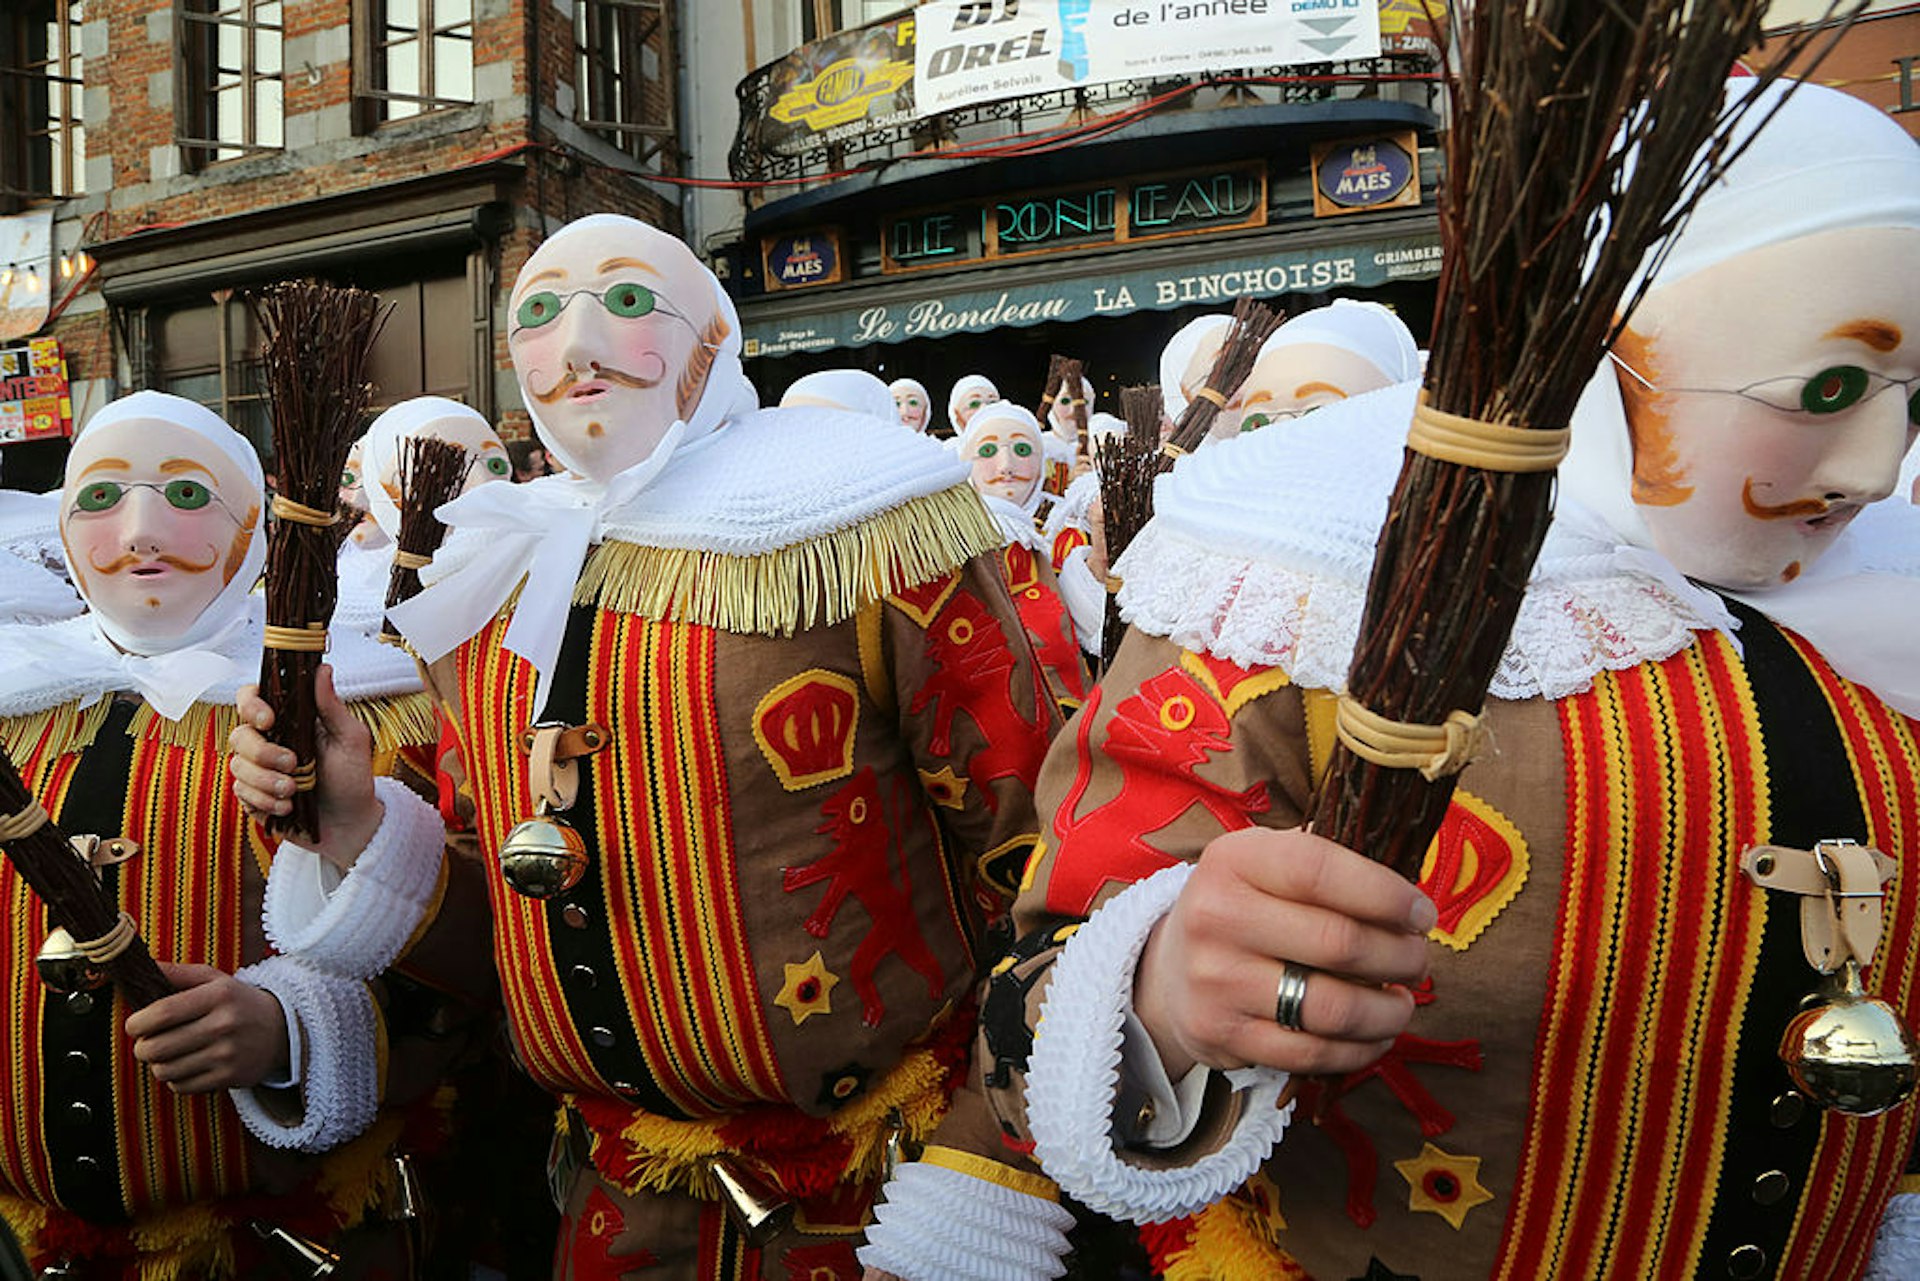 Les Gilles de Binche celebrate Mardi Gras in Binche, a UNESCO World Heritage-recognized Carnival